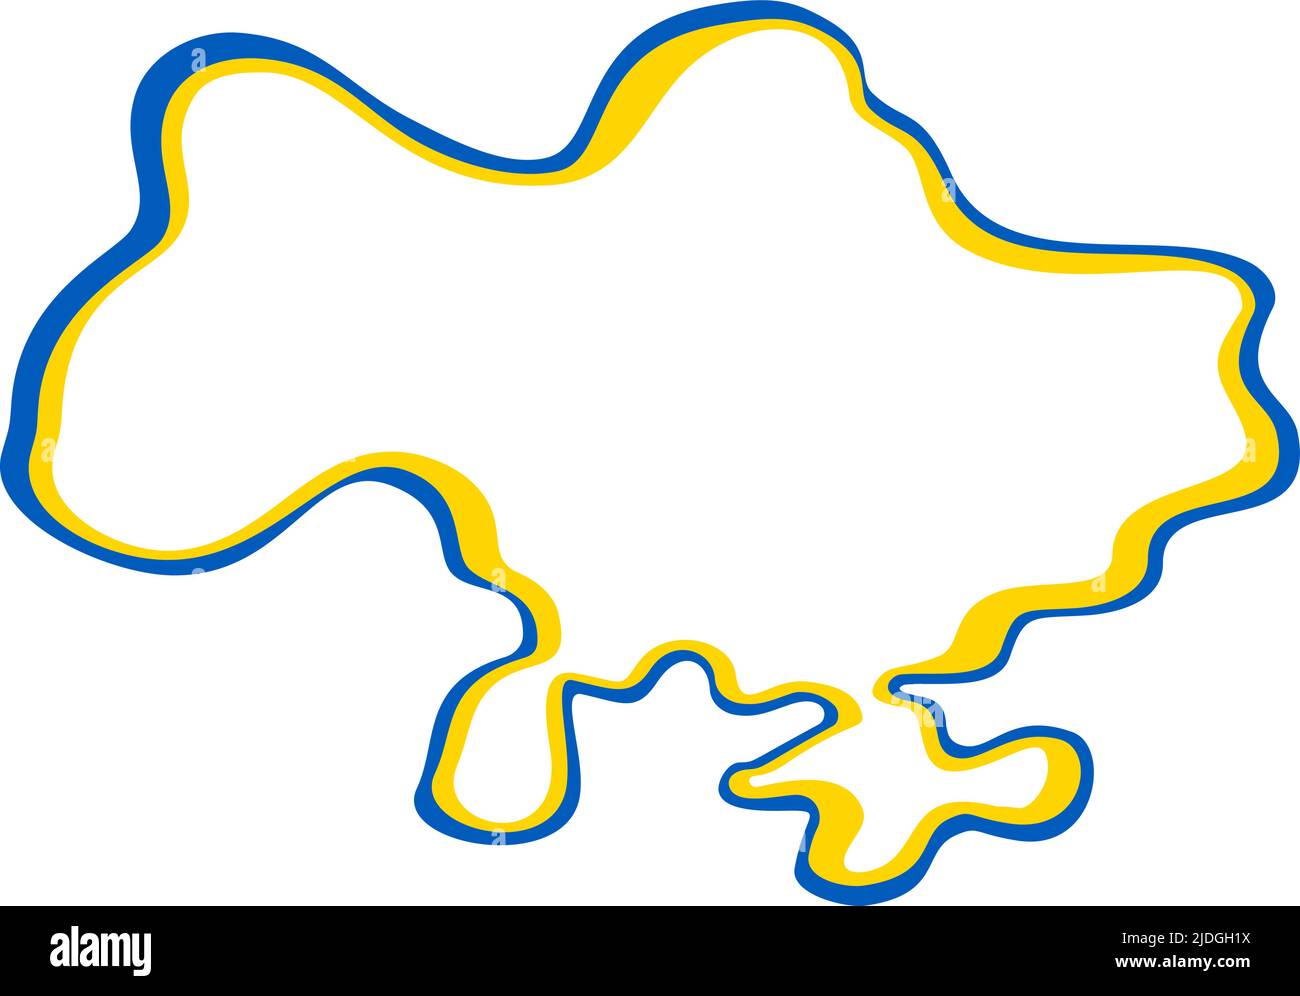 Linienkunst-Vektorkarte der Ukraine mit blauem und gelbem Pinselstrich. Rettet Die Ukraine. Designelement für Aufkleber, Banner, Poster, Karte. Isoliert Stock Vektor